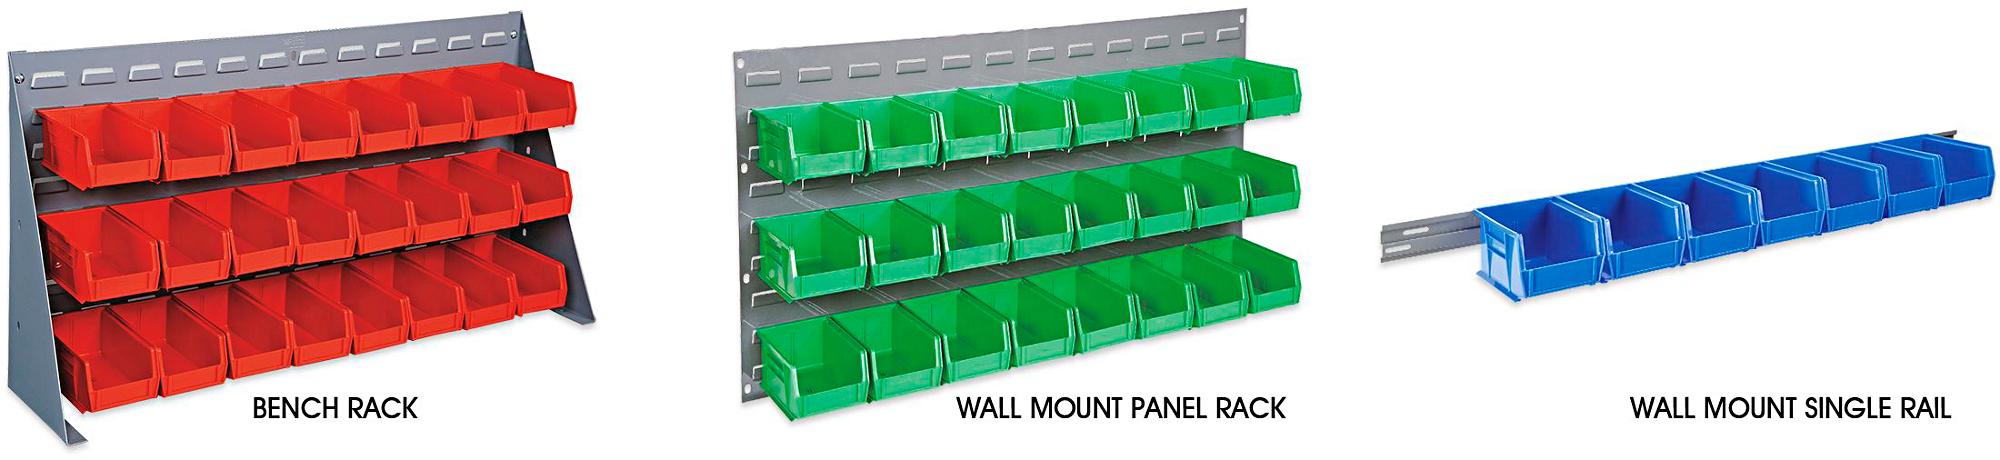 Bench / Panel Racks